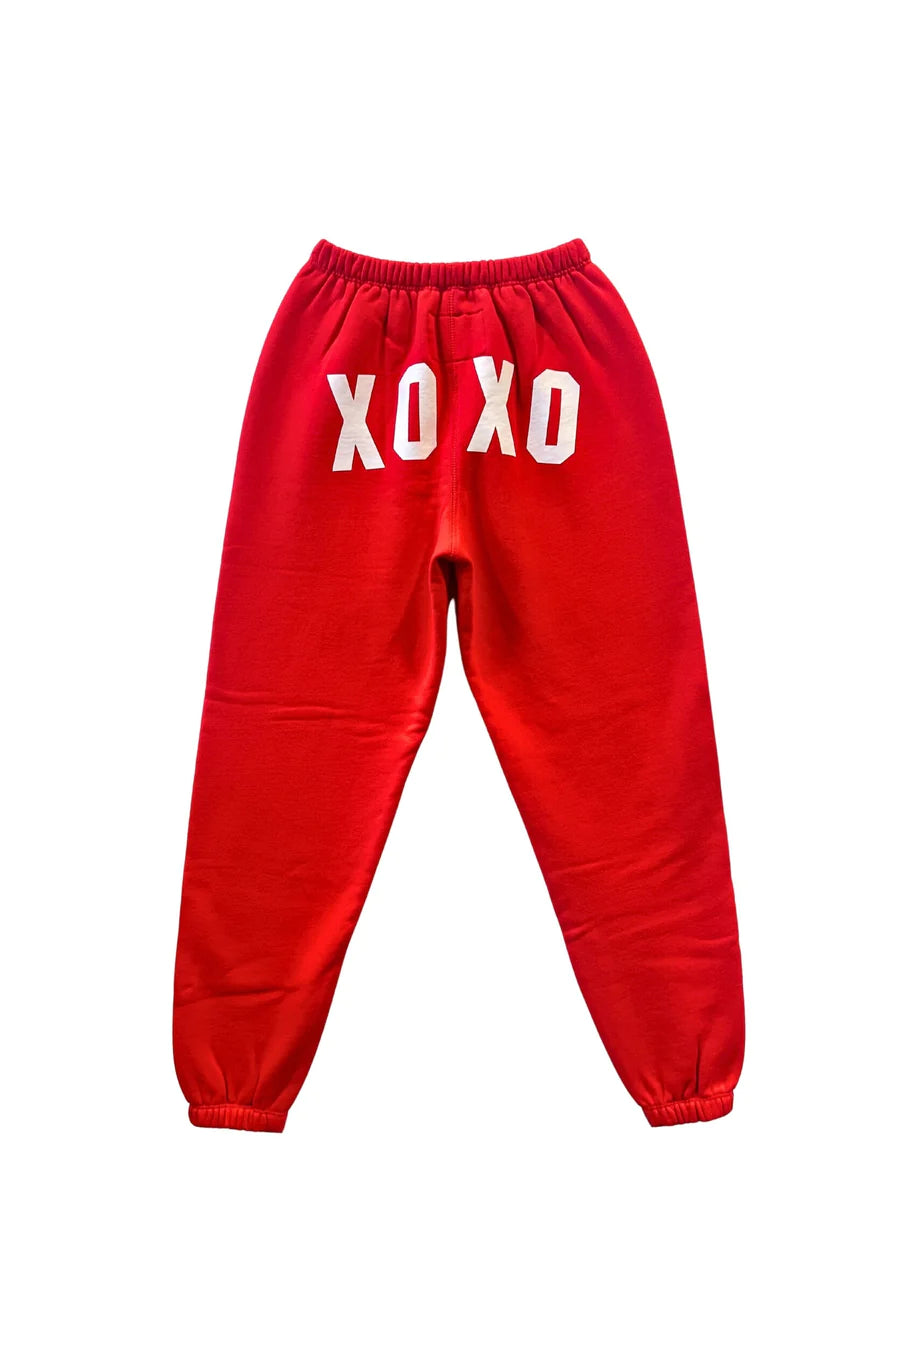 Shane XOXO Red Sweat Pants (Tweens) - Katie J